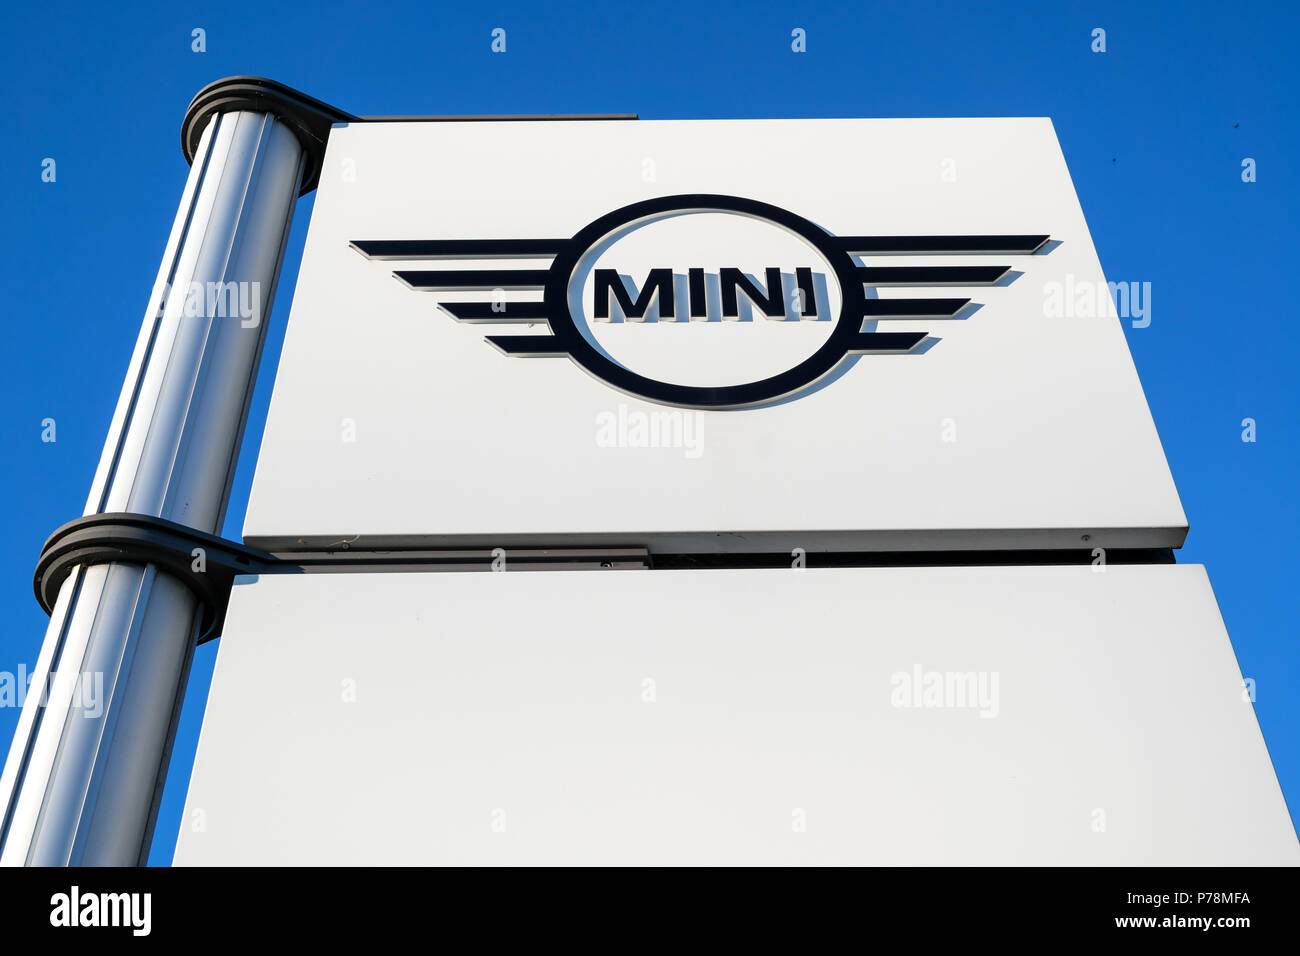 Mini Händler Zeichen gegen den blauen Himmel. Mini ist eine britische Automobile der Marke BMW im Besitz seit 2000, und von ihnen für eine Reihe von kleinen Autos verwendet. Stockfoto